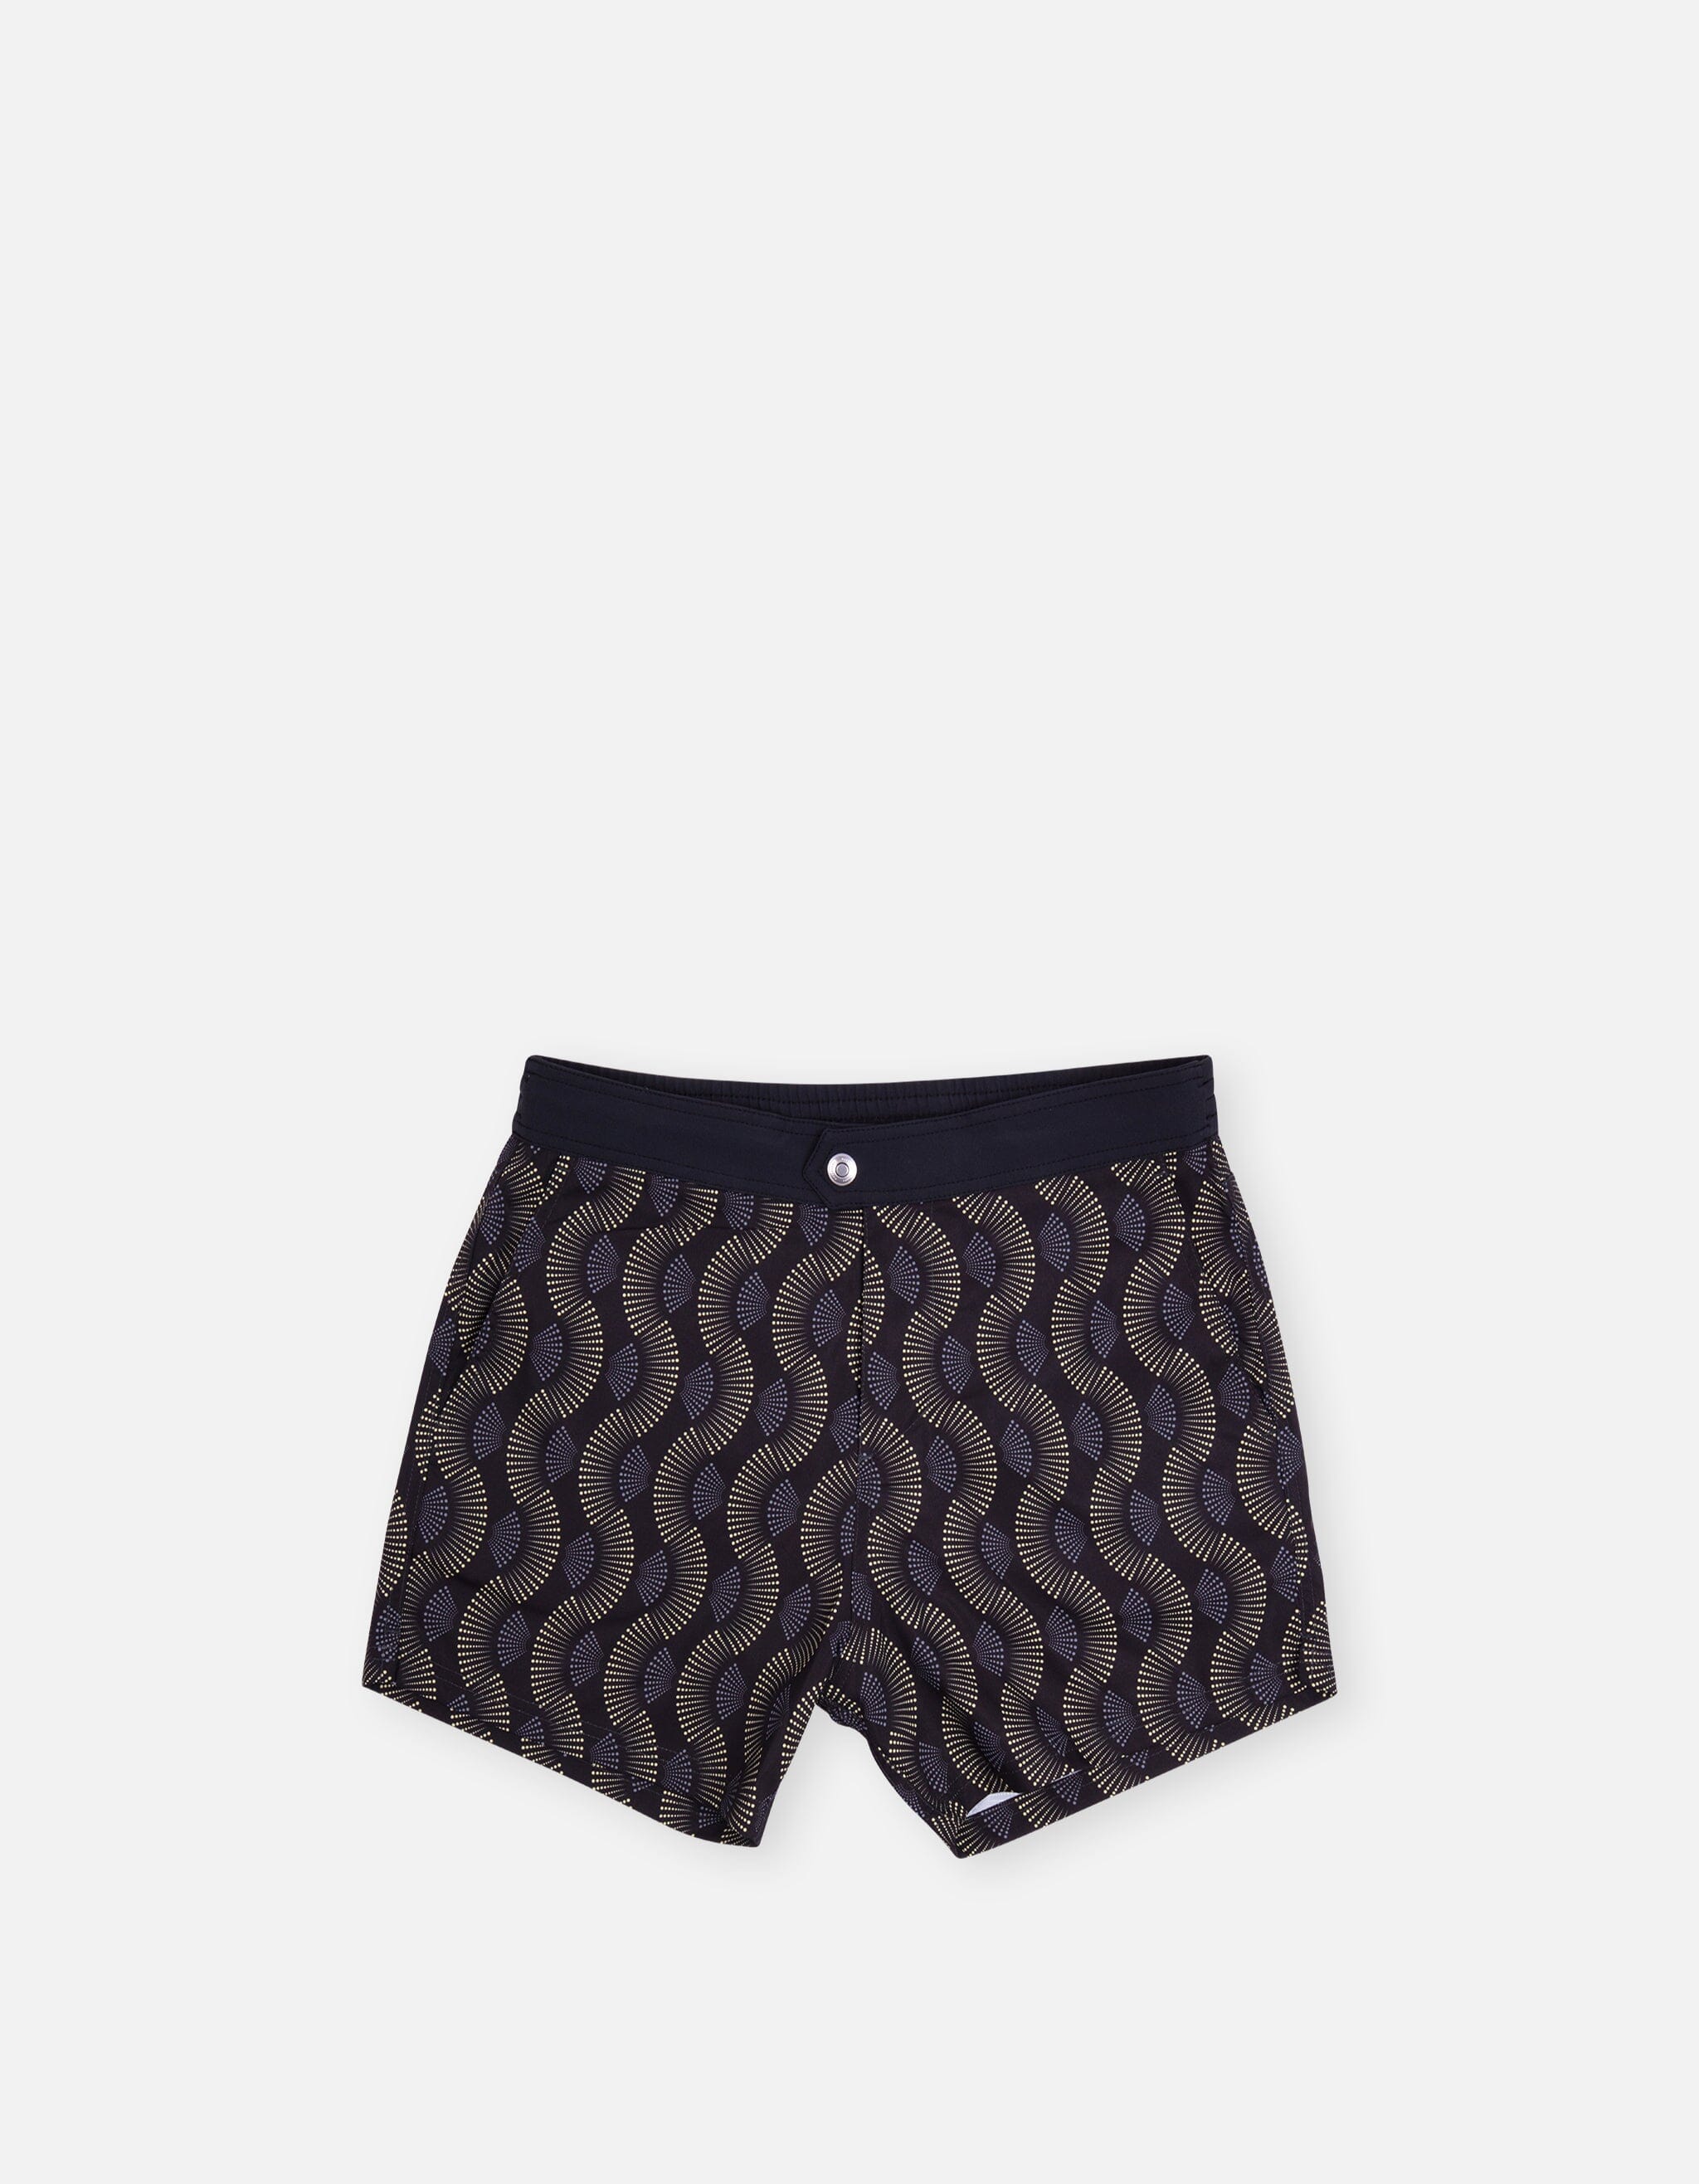 Louis Vuitton, Shorts, Louis Vuitton Swim Trunks Size 38